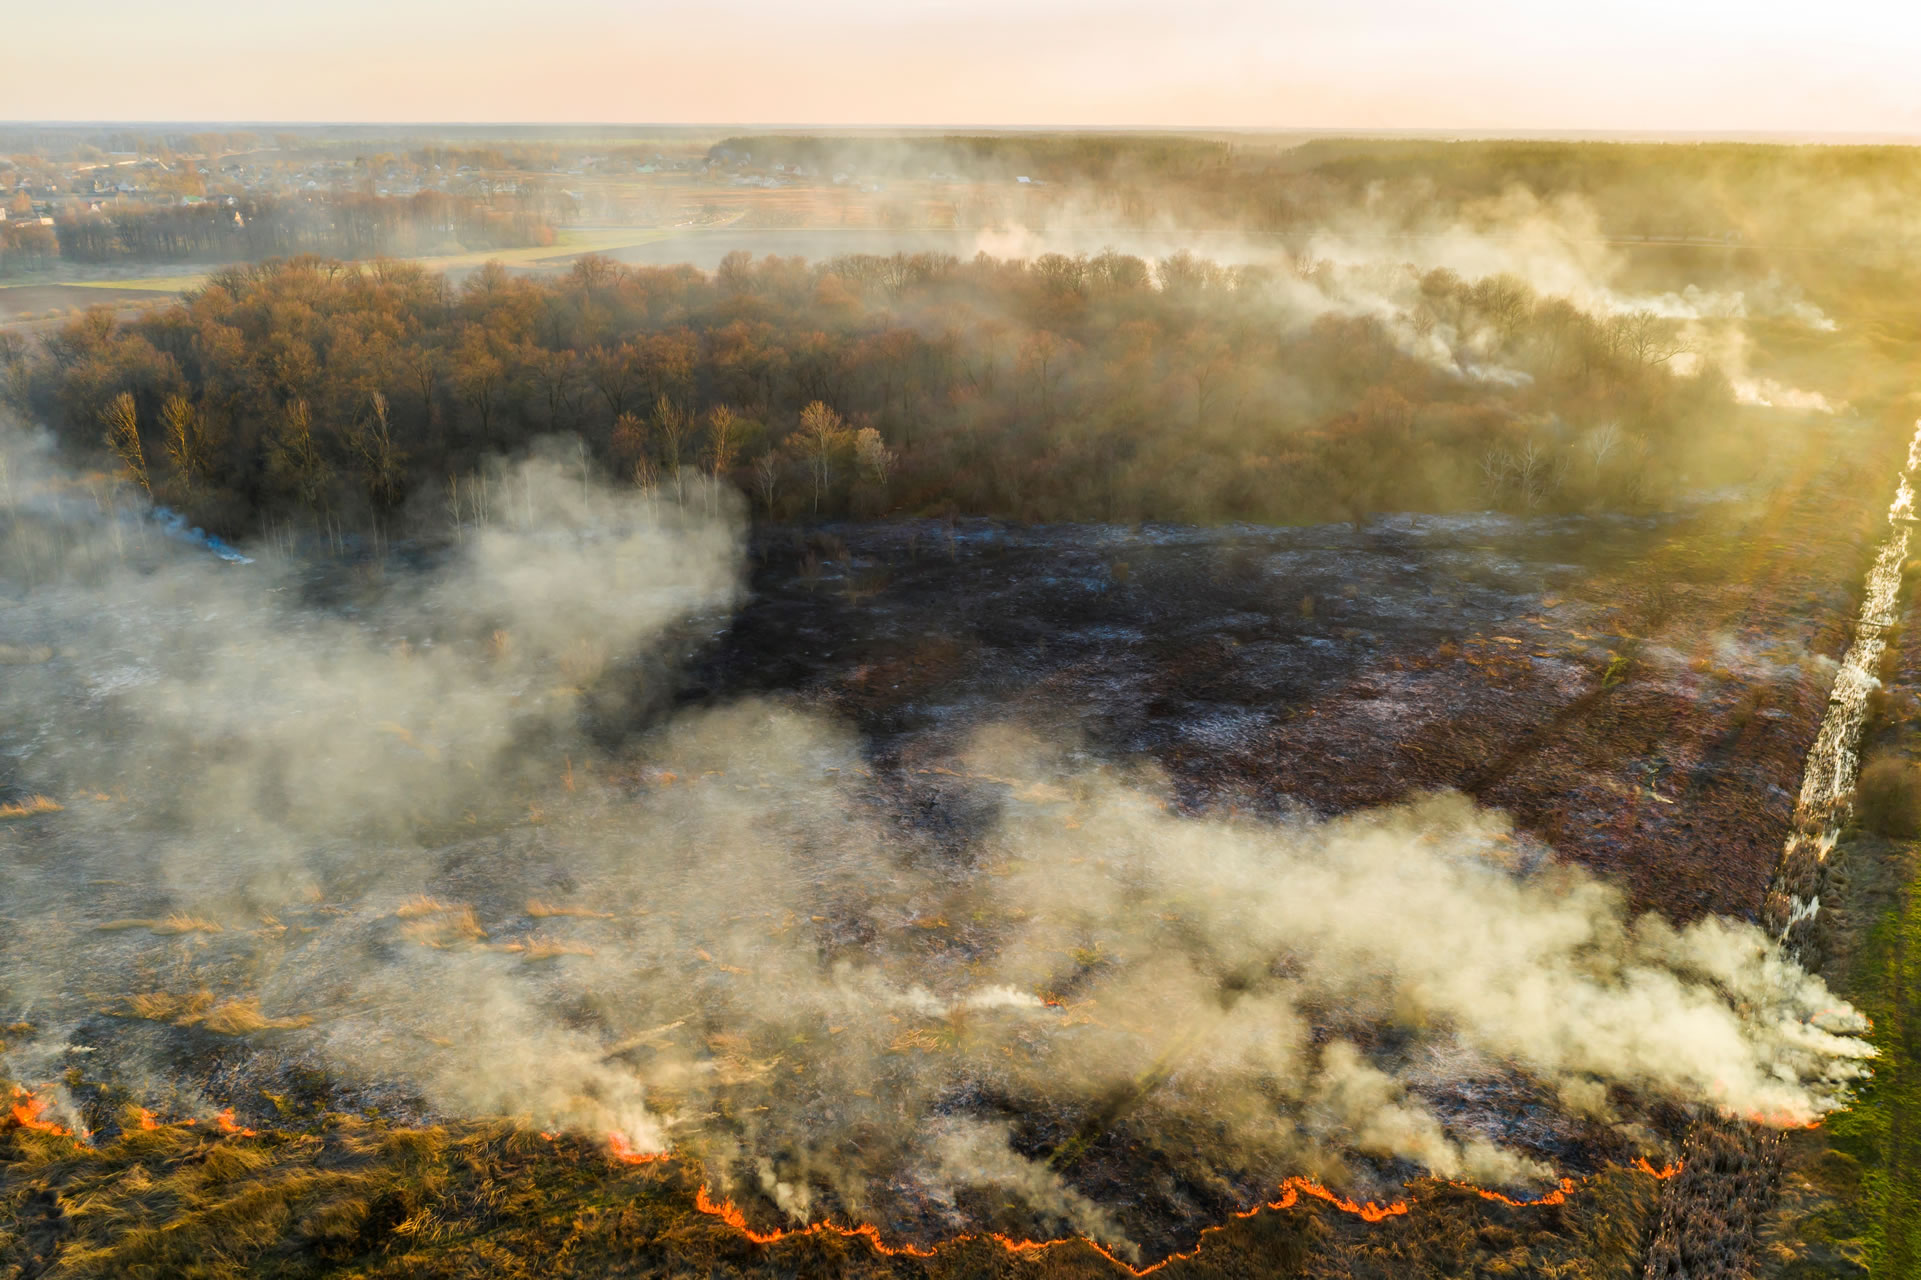 Estado do AM teve em agosto o maior número de queimadas de toda a Amazônia desde 2000